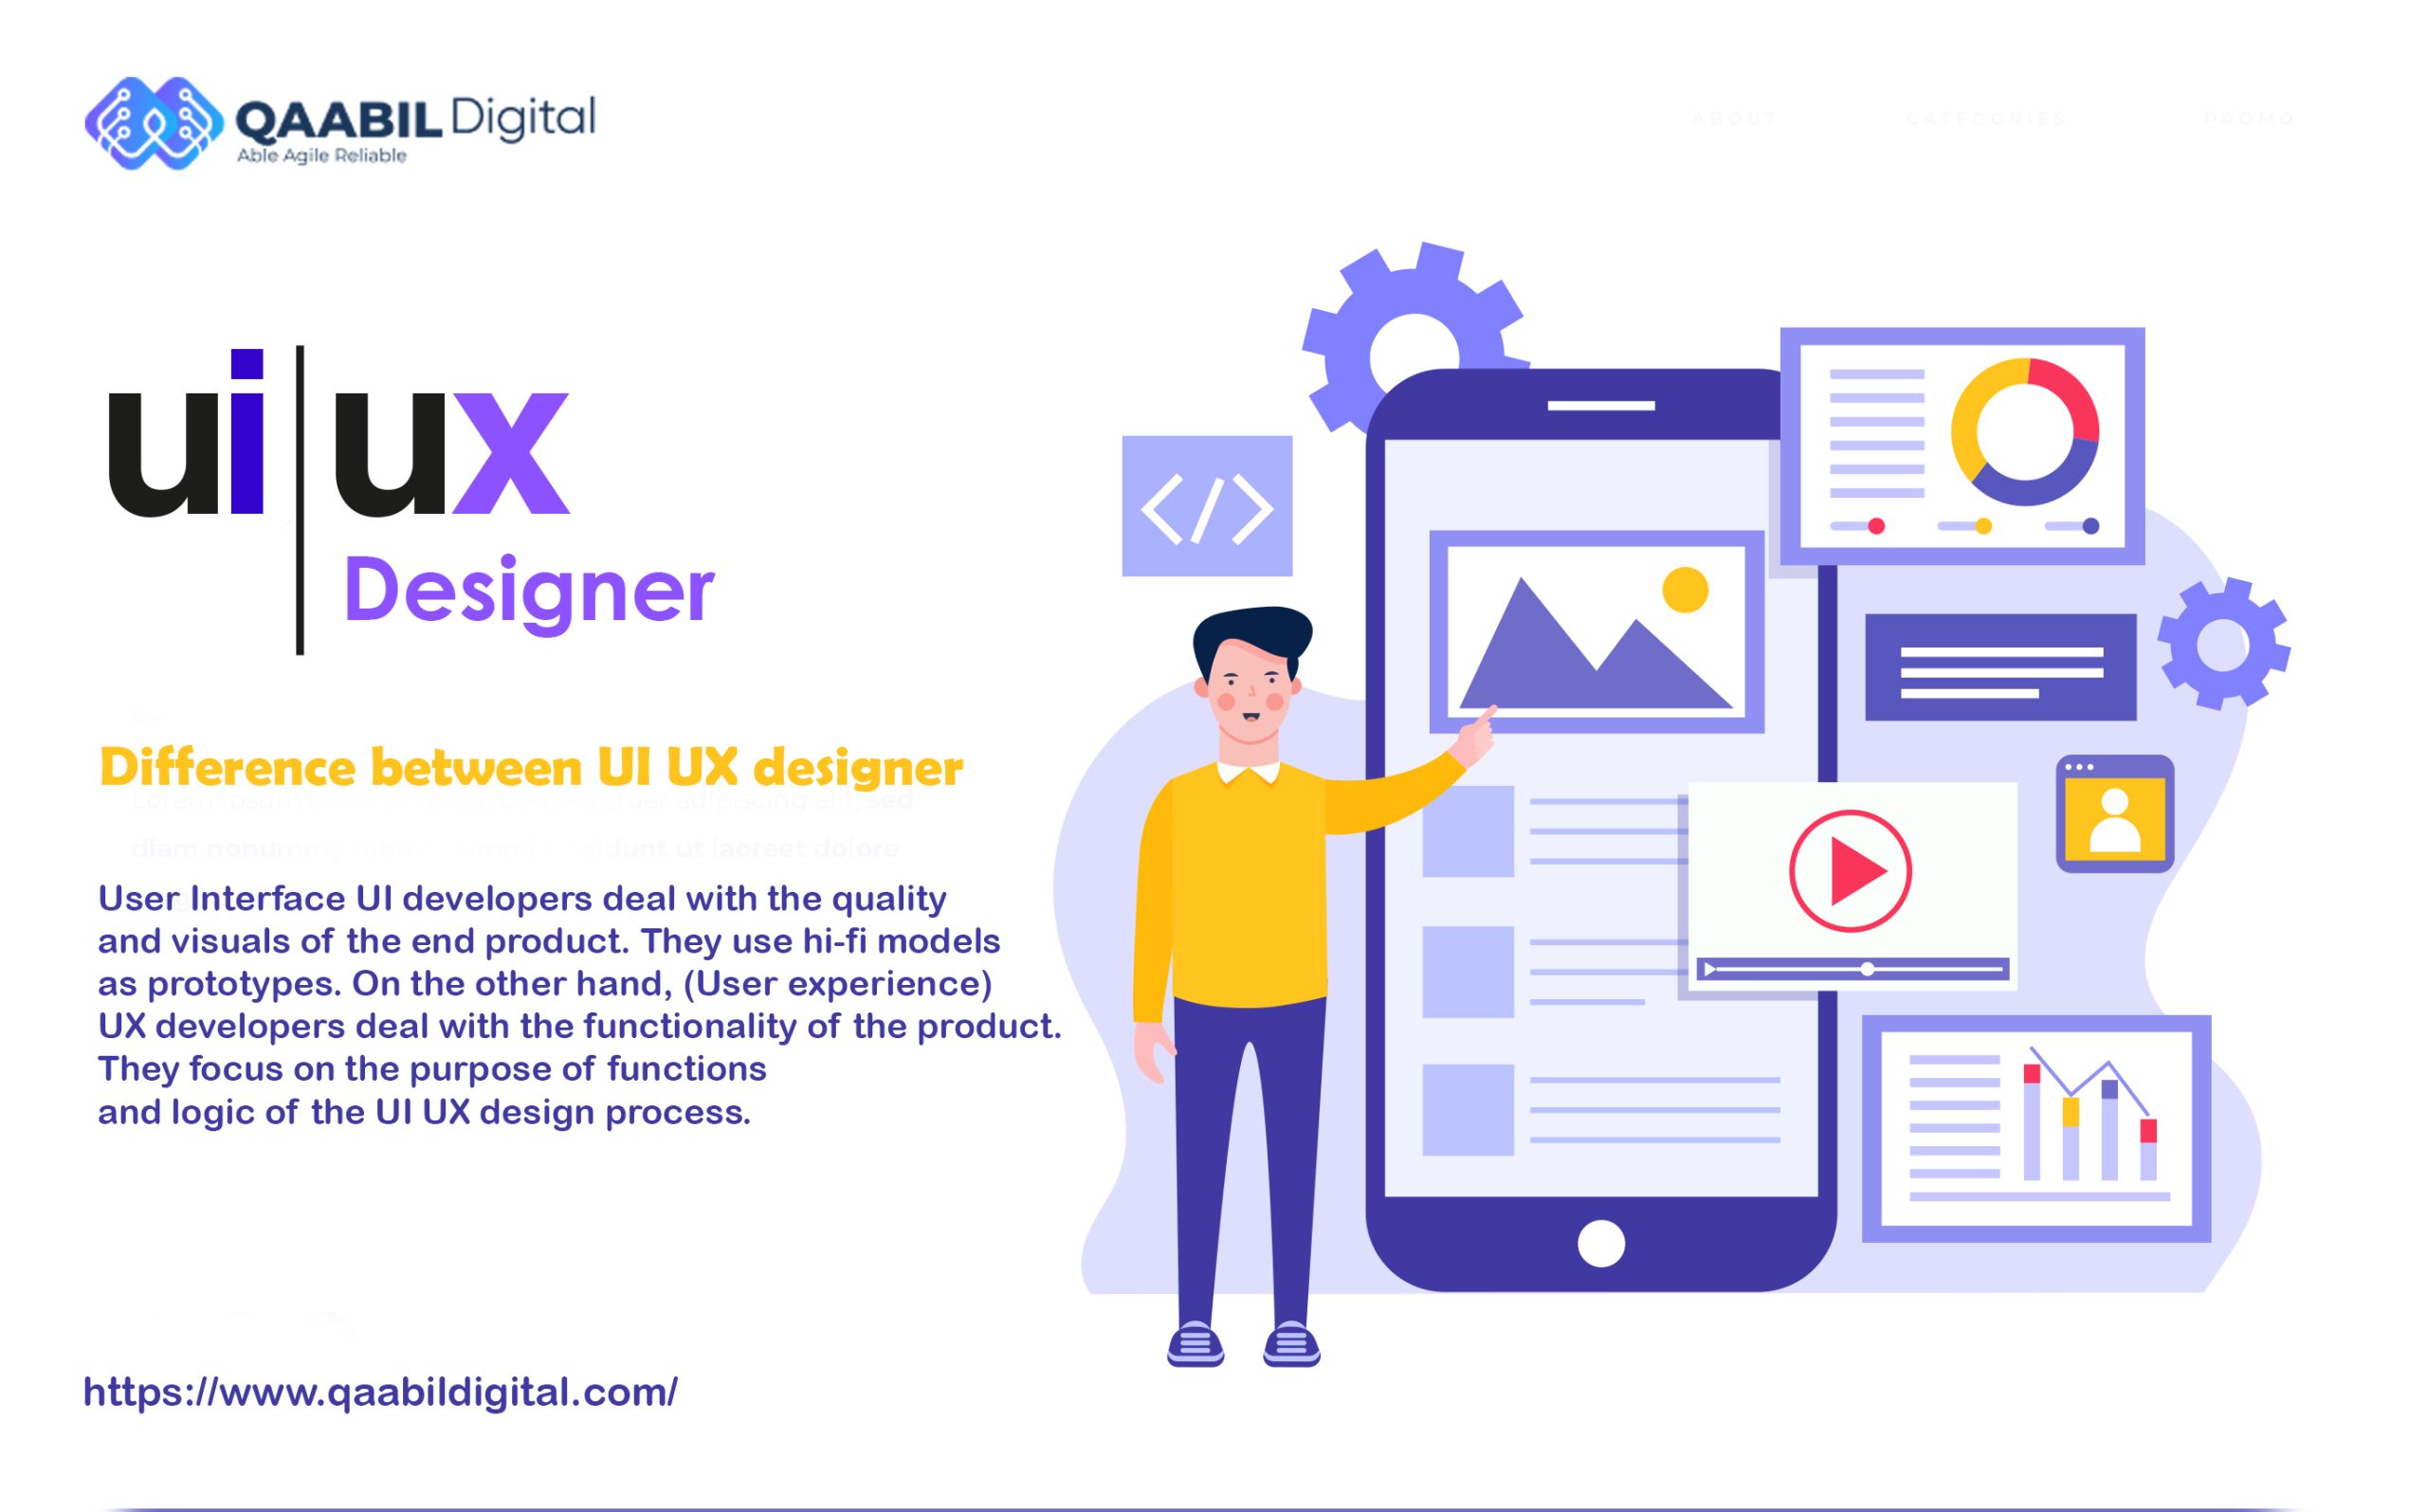 UI UX designer